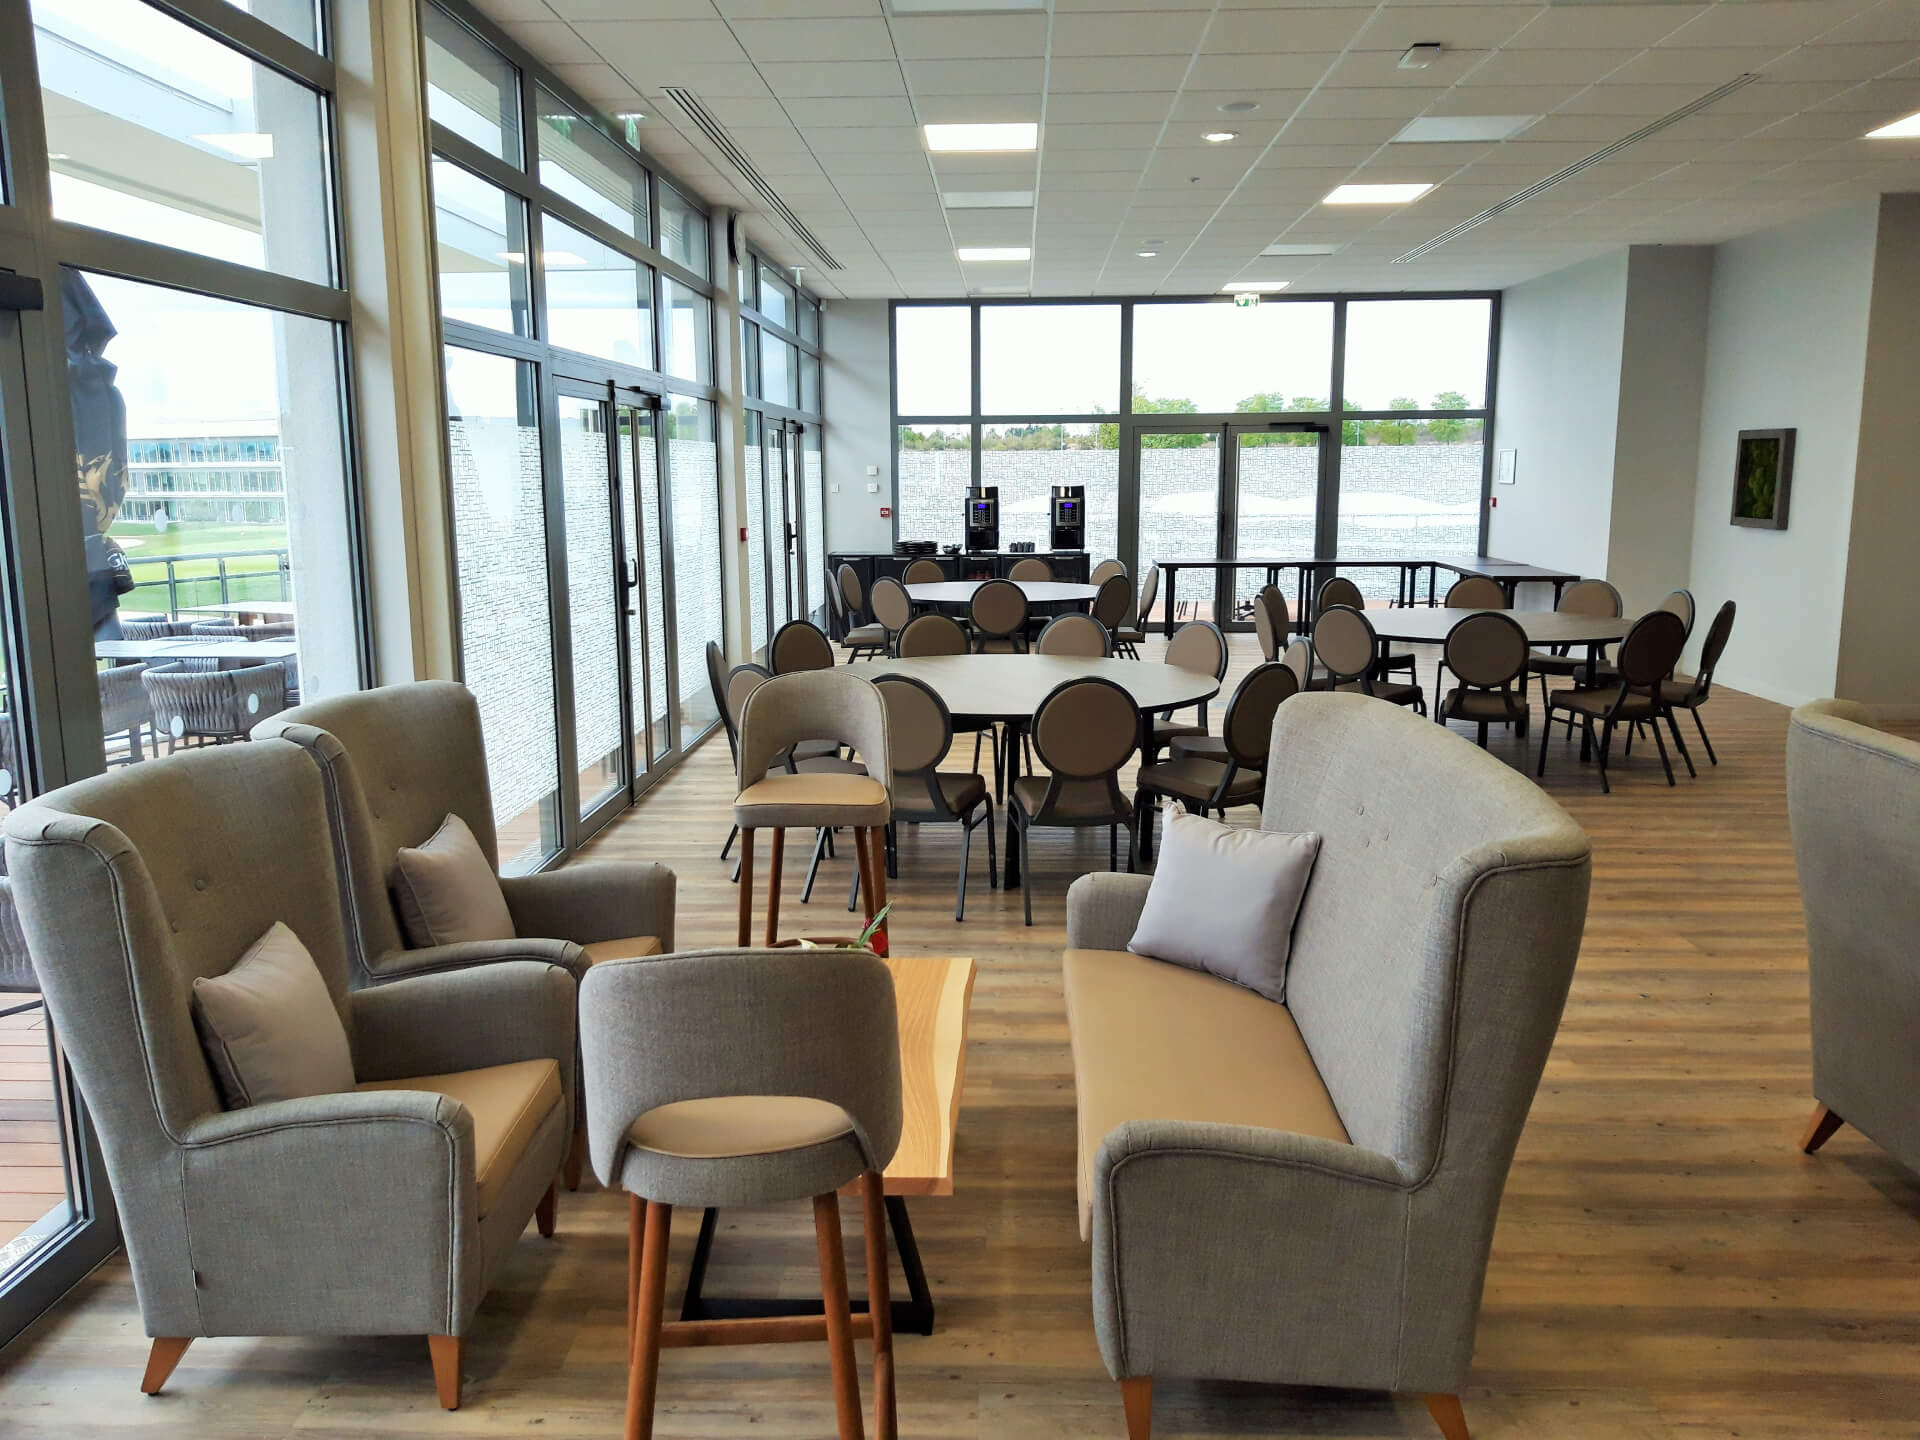 Des salles de réunion à proximité de l’aéroport Roissy CDG